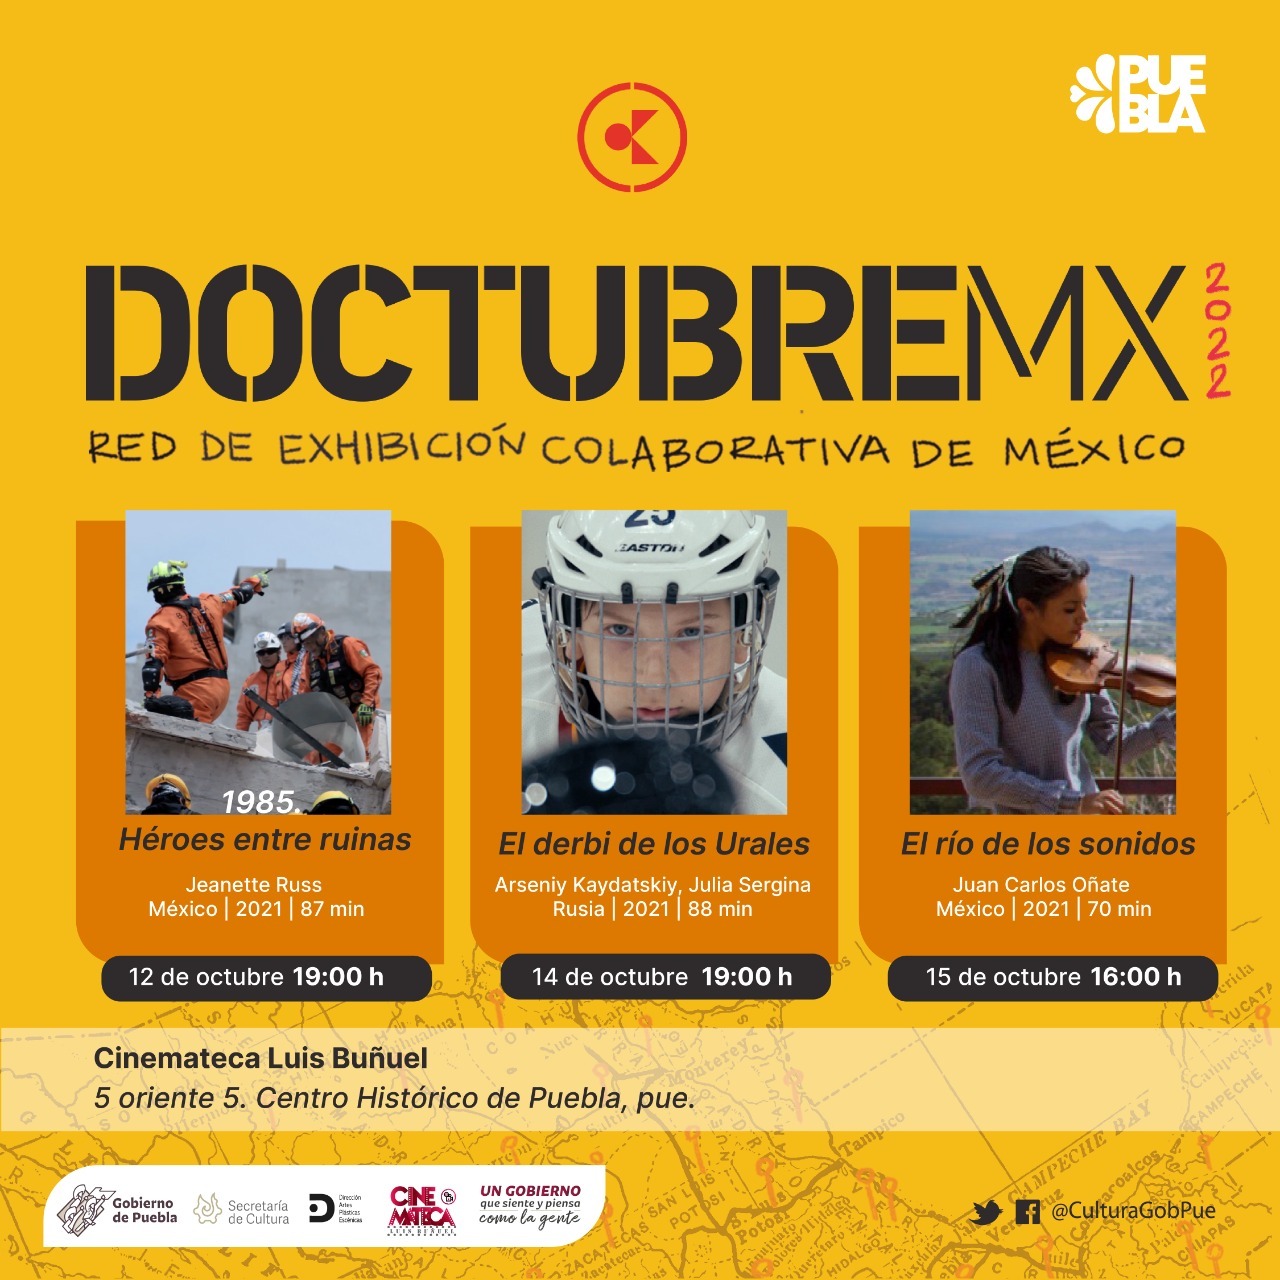 Participa Puebla en Doctubre Mx, red de exhibición cinematográfica: Cultura